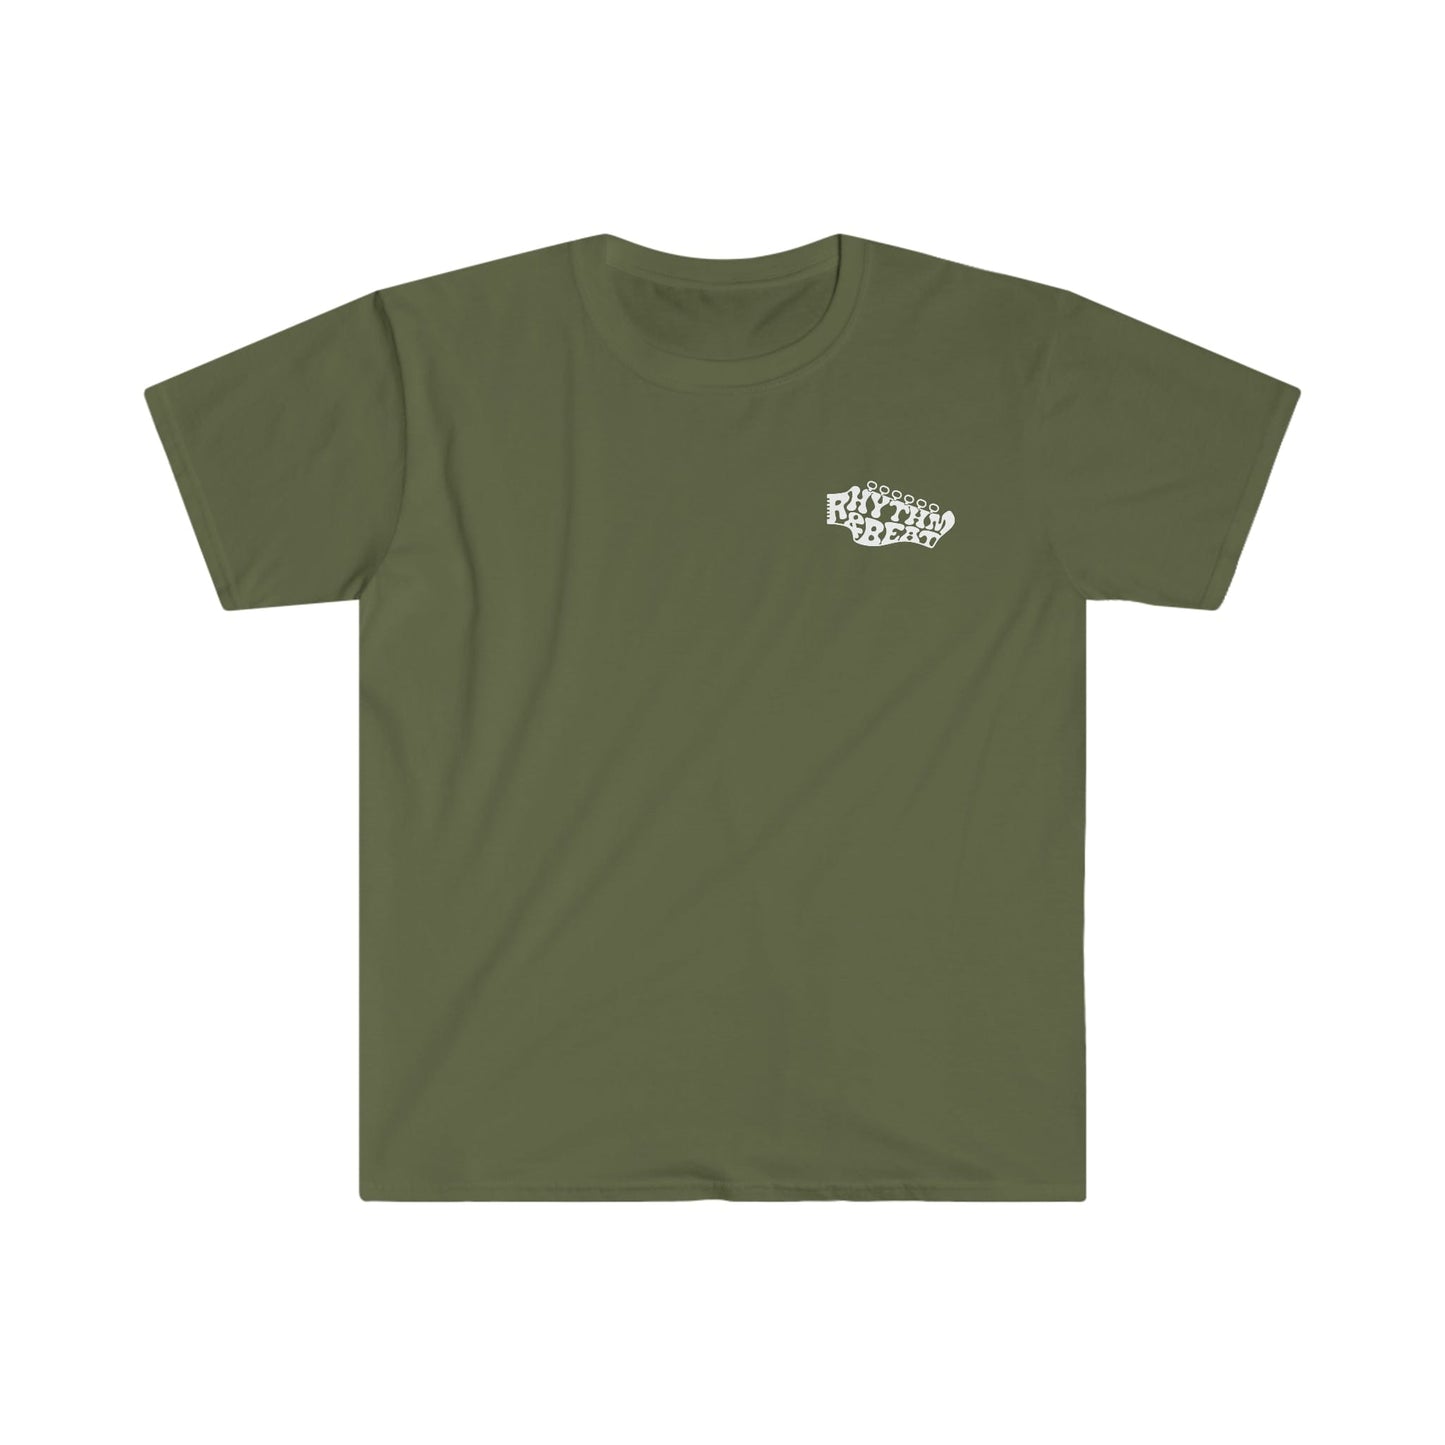 Printify T-Shirt Military Green / S Liberty Branded T-Shirt